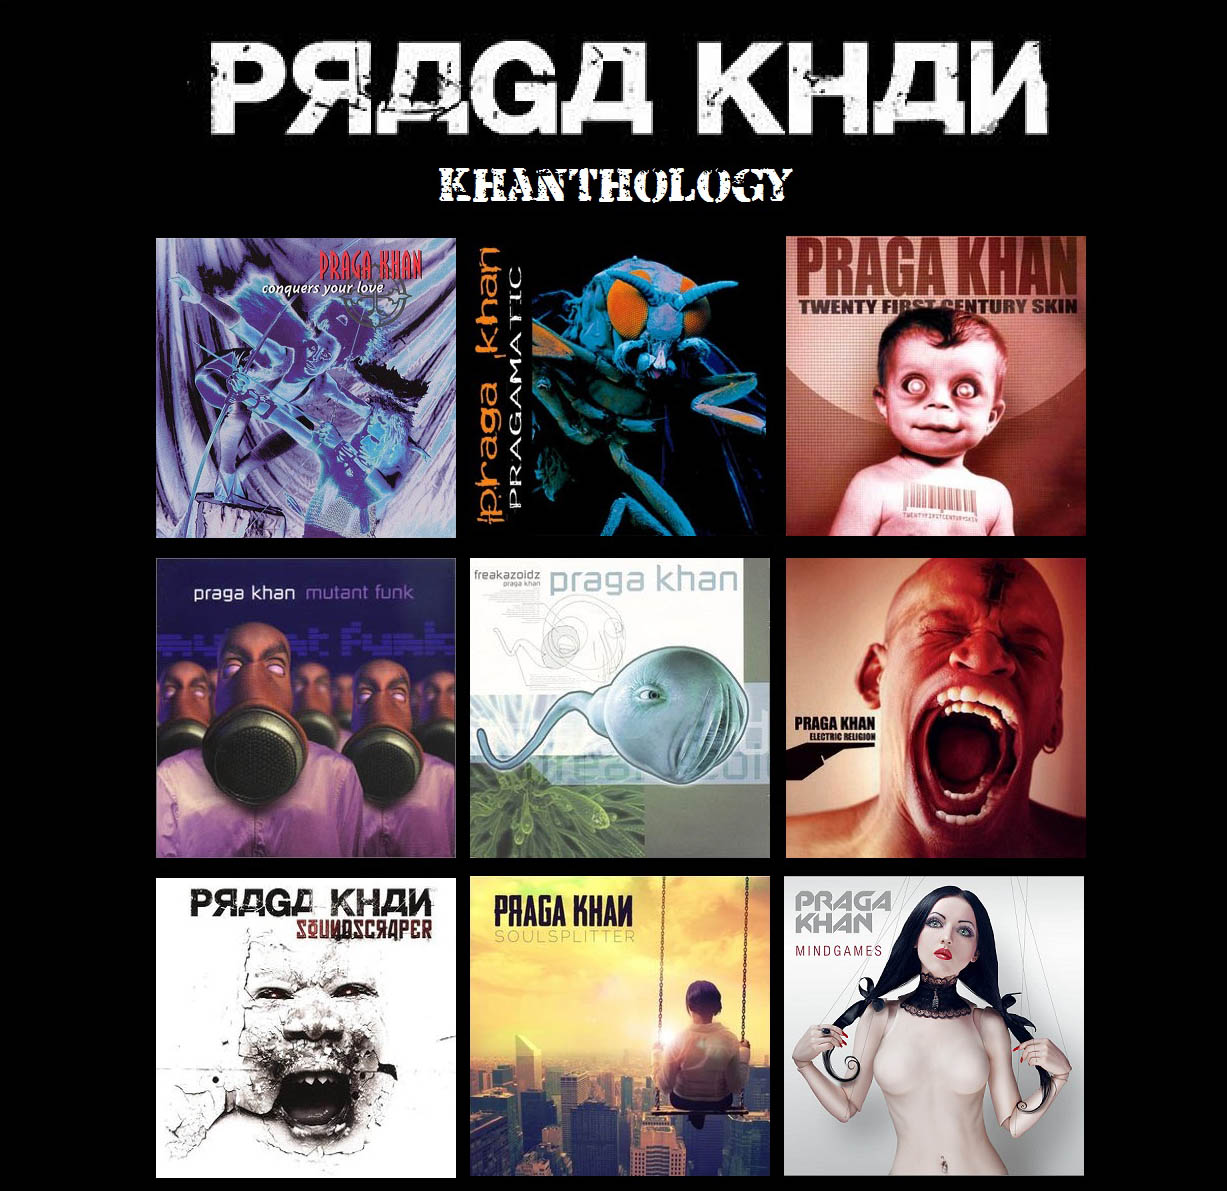 Praga Khan - Mindgames